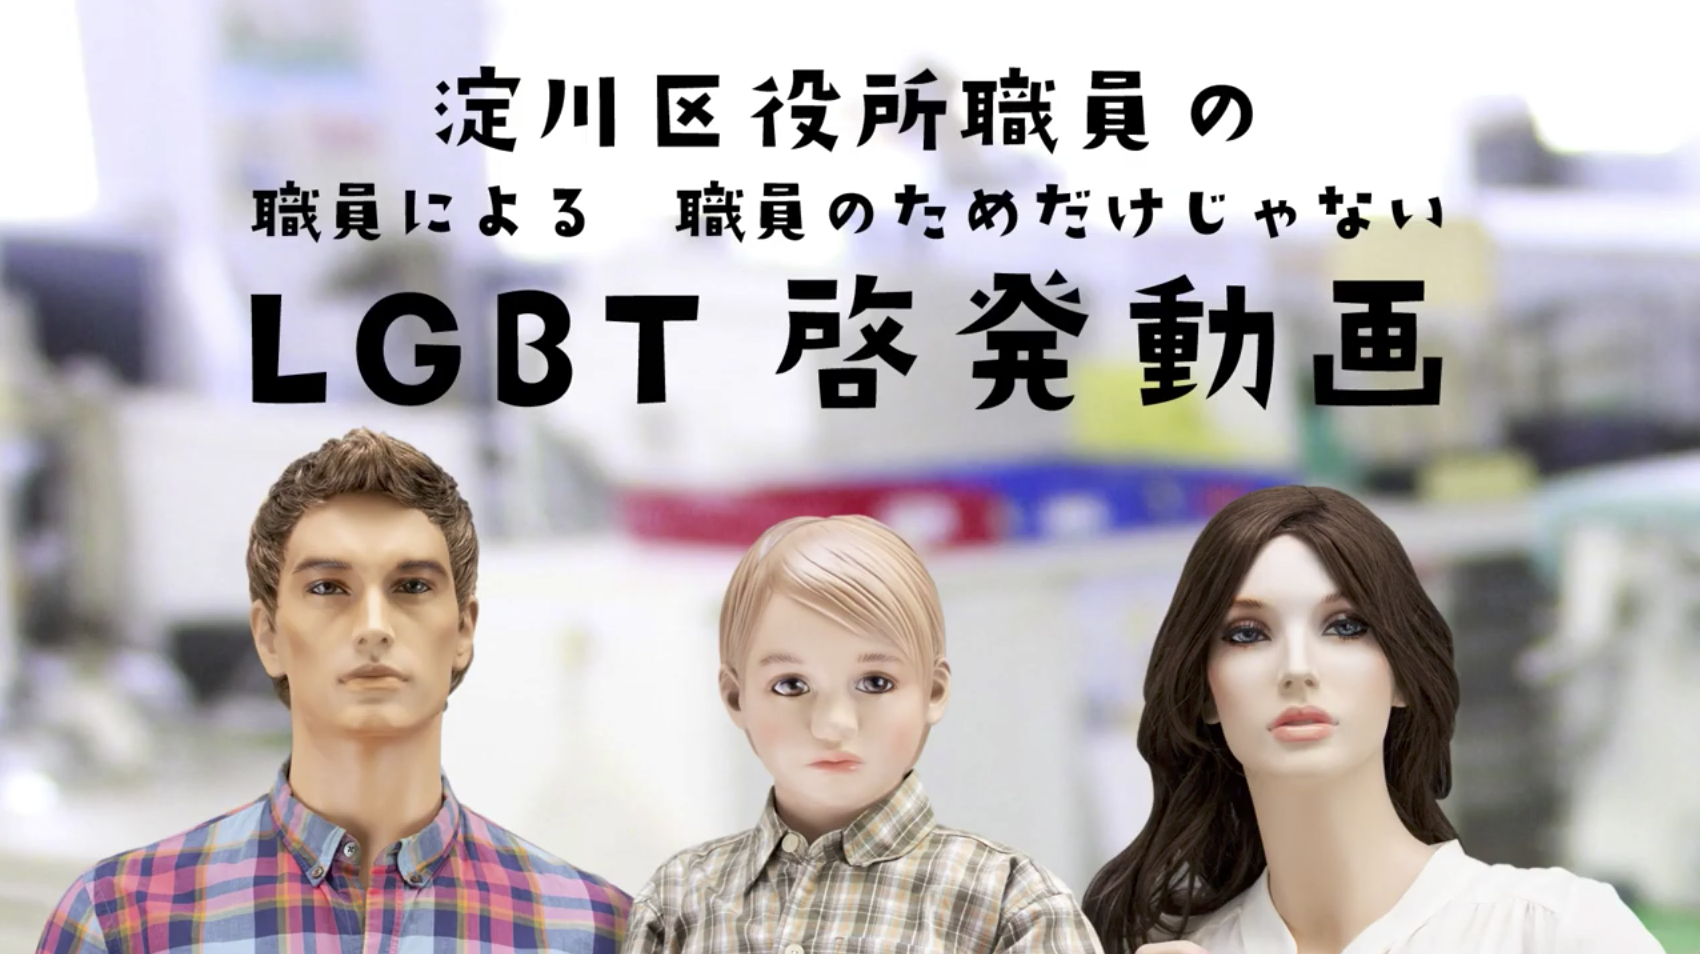 淀川区LGBT啓発動画